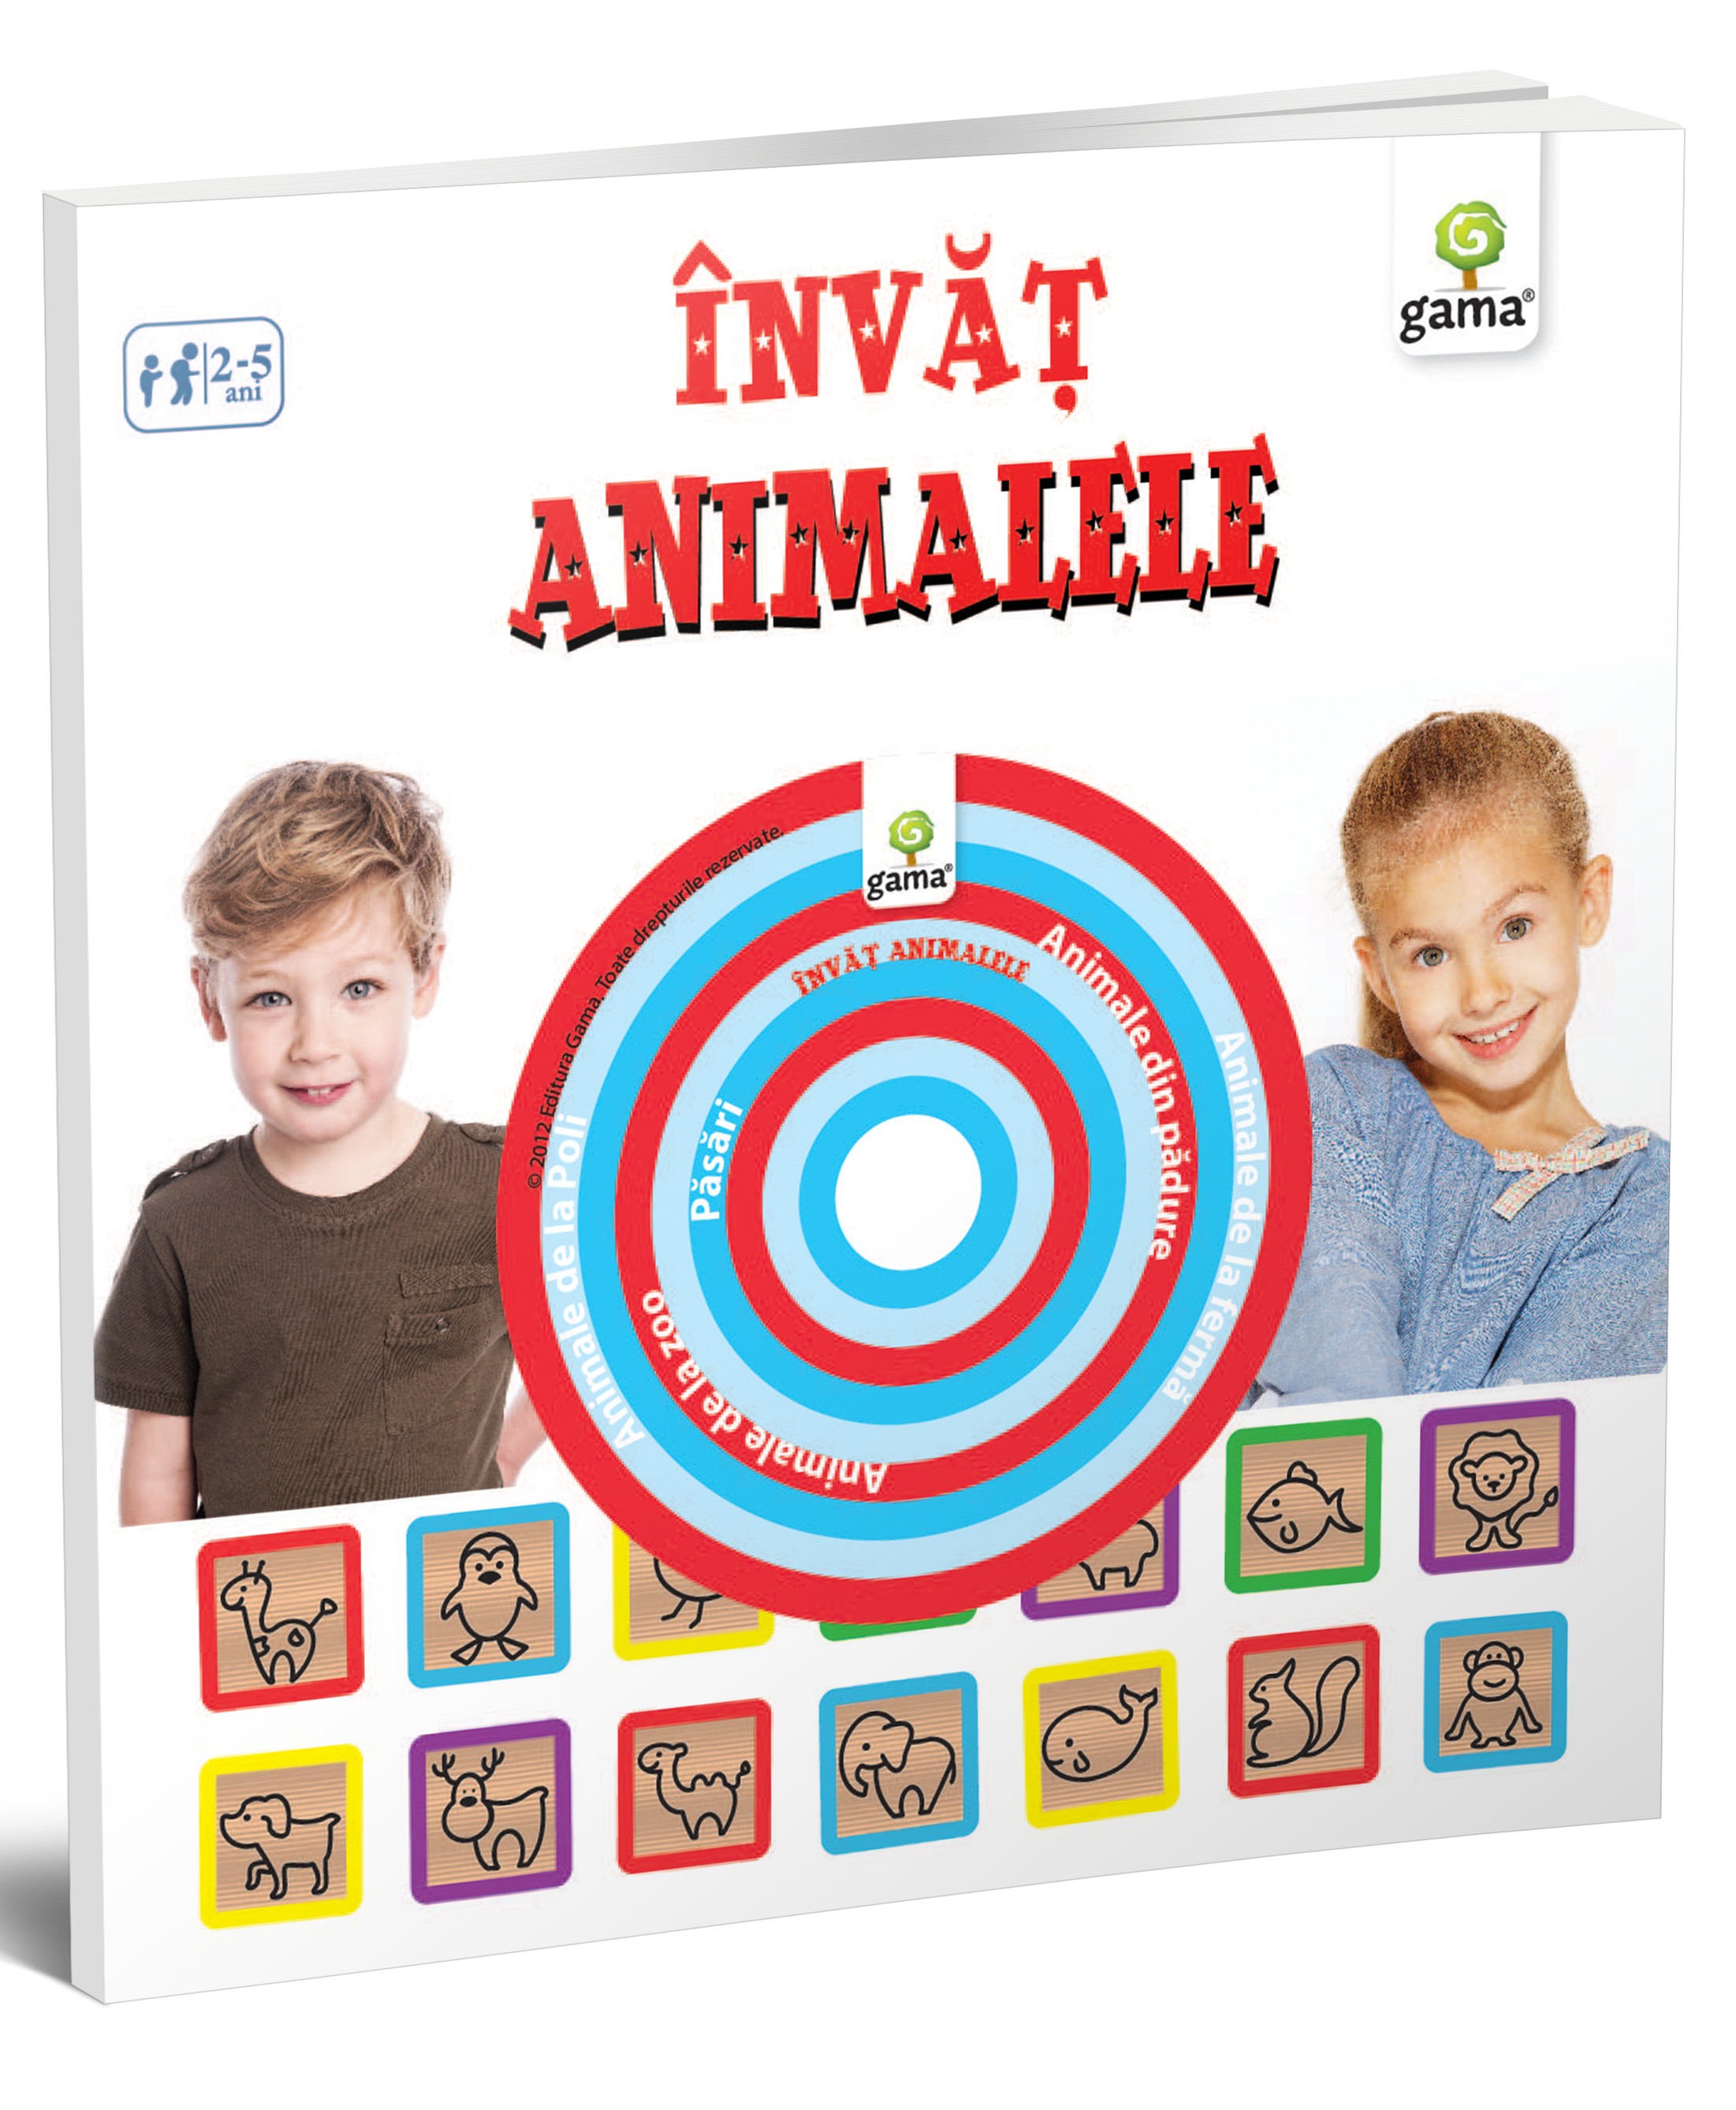 PDF Invat animalele – Carti educative | carturesti.ro Carte